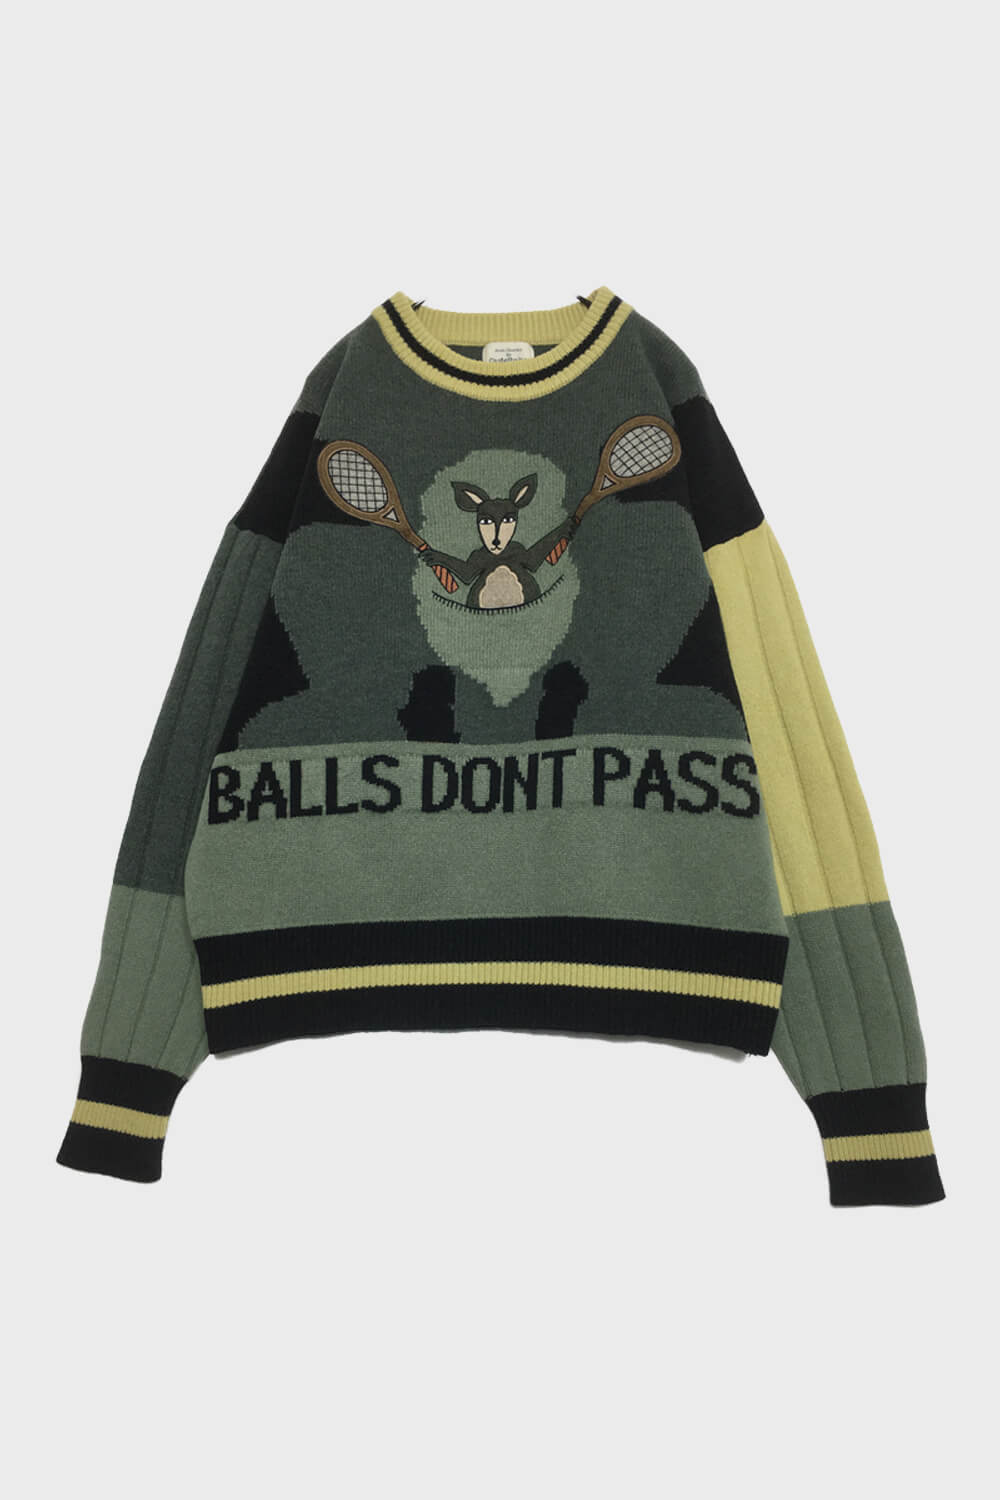 Balls Don't Pass Kangaroo Retro Sweater